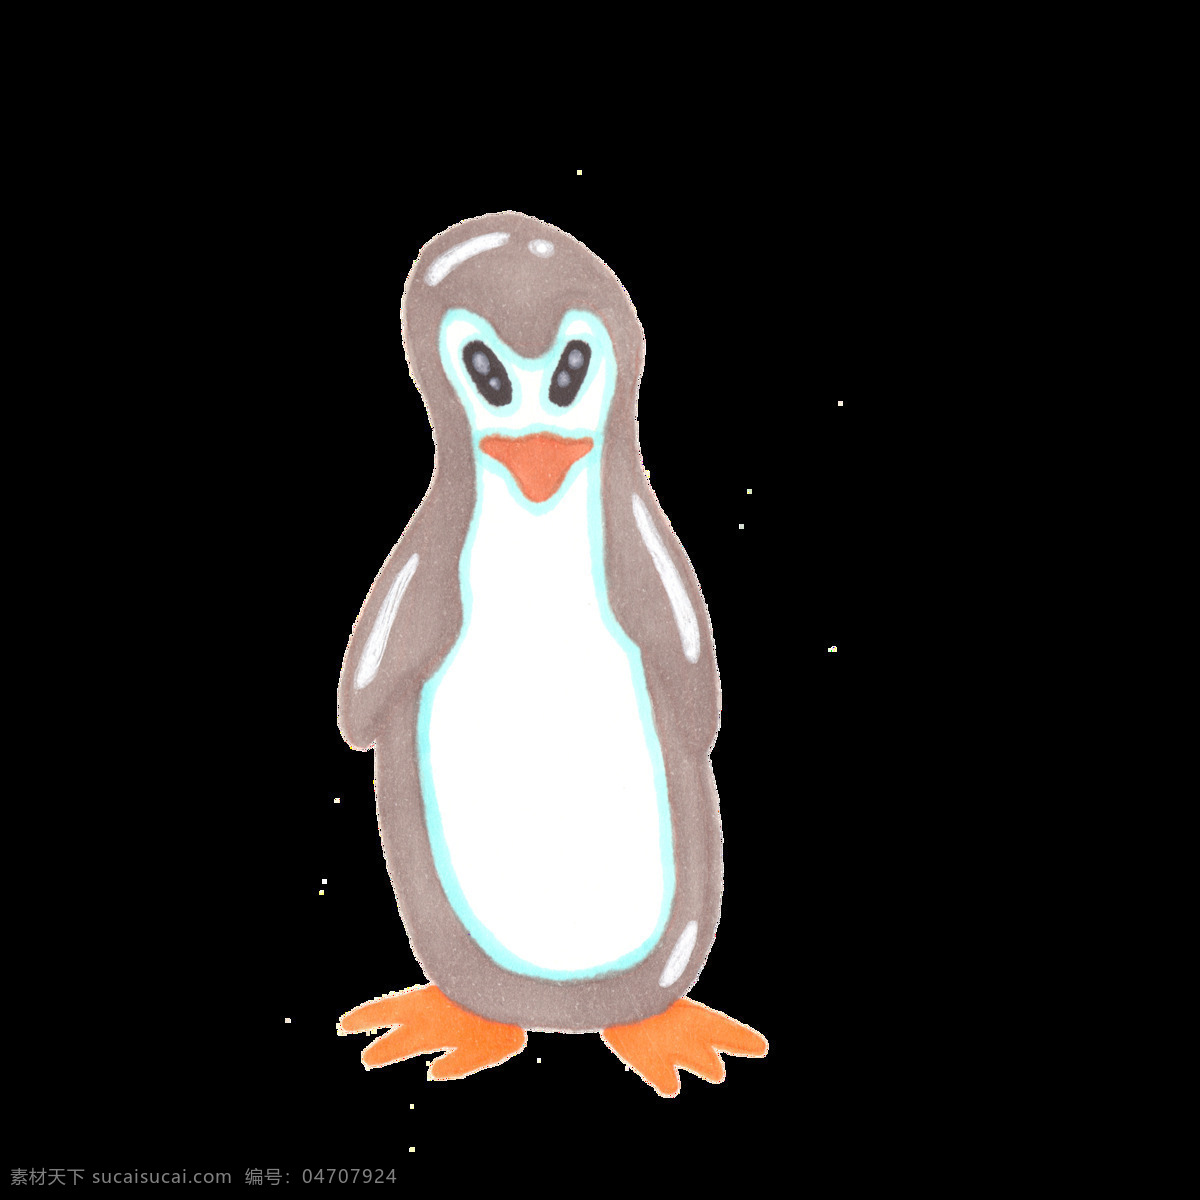 水彩 卡通 企鹅 透明 抠图专用 装饰 设计素材